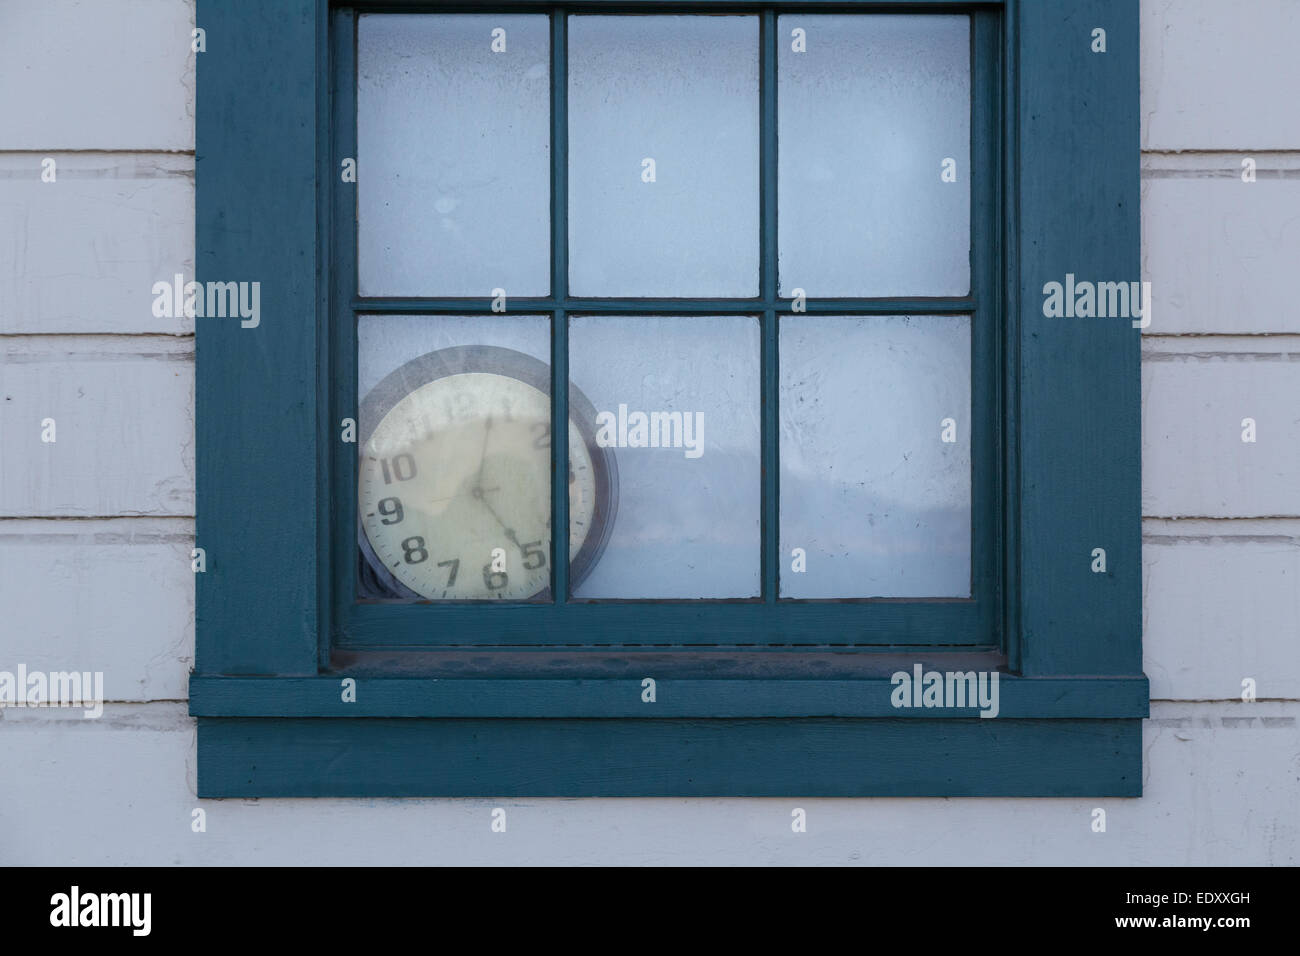 An old clock lies forgotten behind a window. Stock Photo